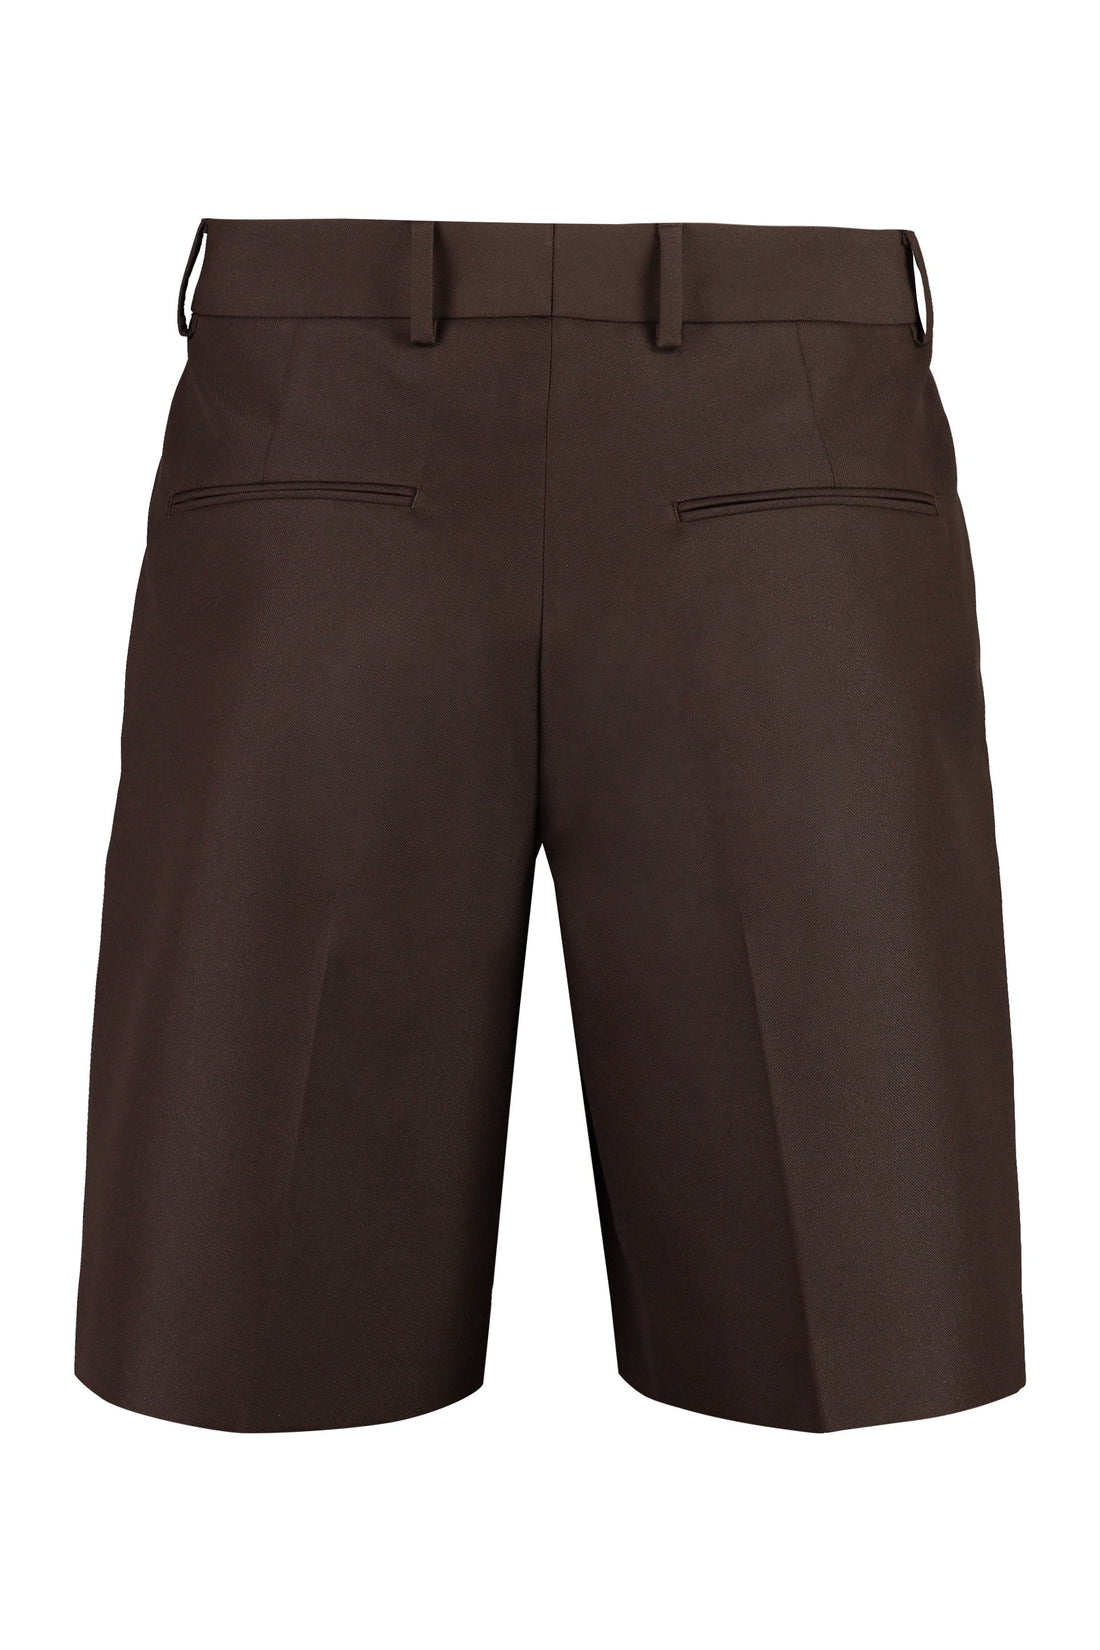 Valentino-OUTLET-SALE-Techno fabric bermuda-shorts-ARCHIVIST